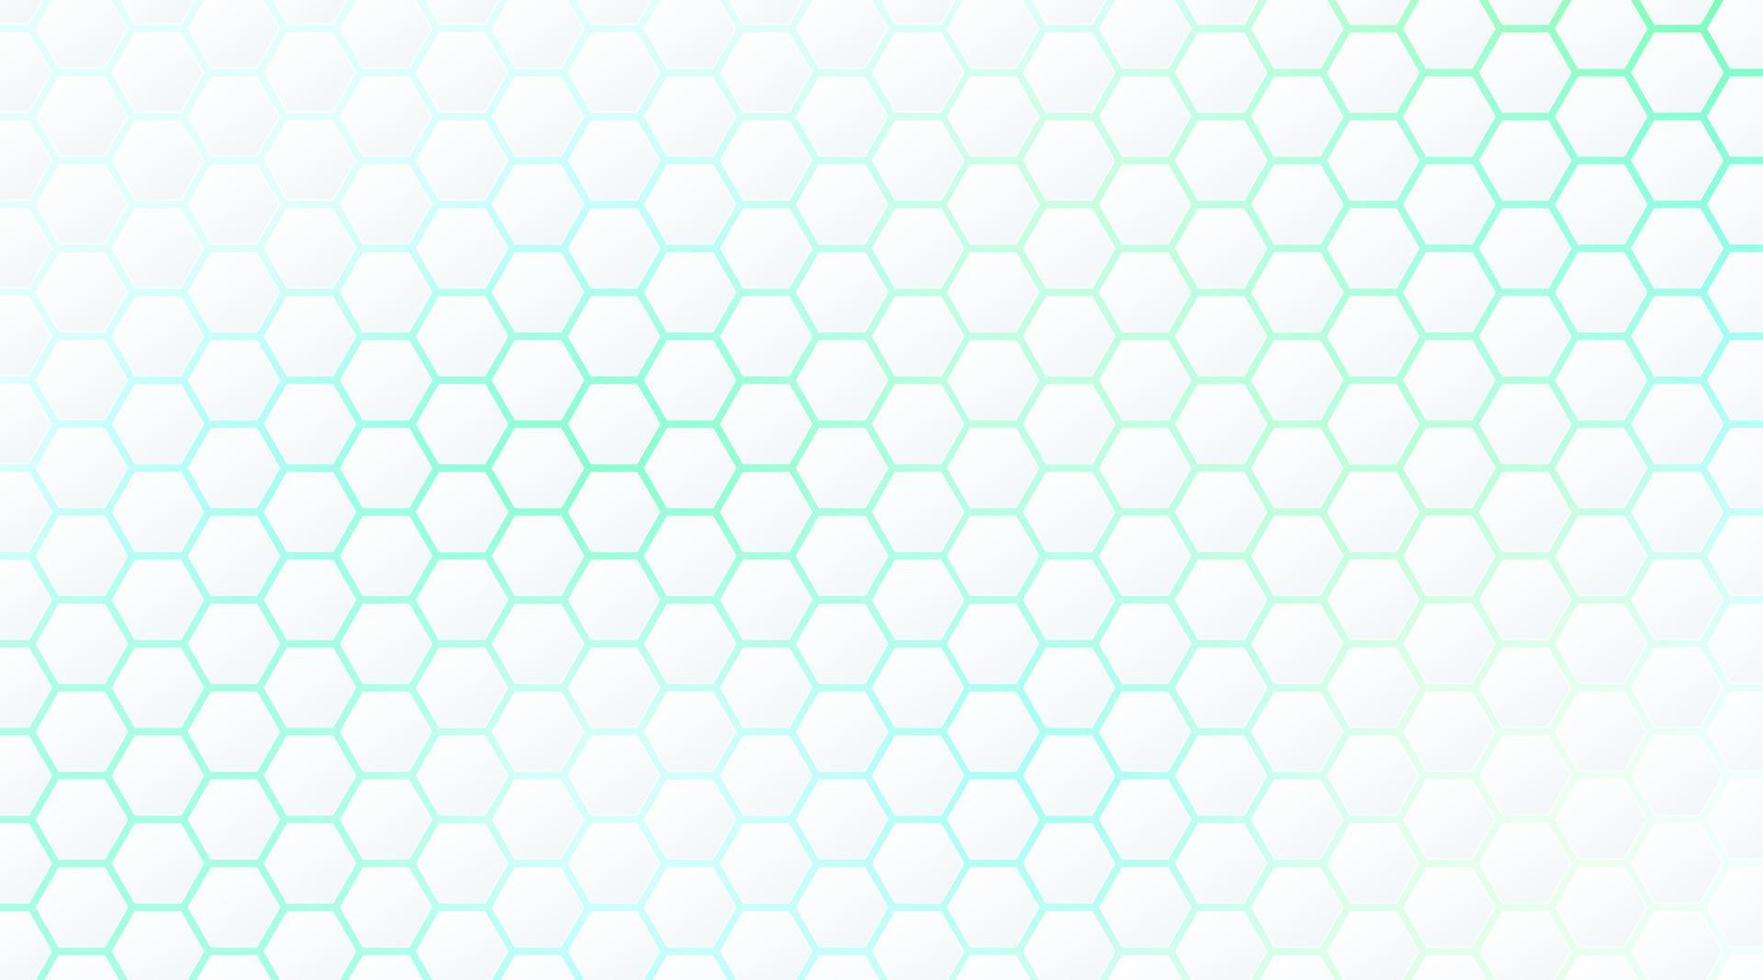 abstracte witte zeshoek patroon op groene en blauwe neon licht achtergrond technologie stijl. moderne futuristische geometrische vorm webbannerontwerp. u kunt gebruiken voor voorbladsjabloon, poster, flyer, printadvertentie. vector